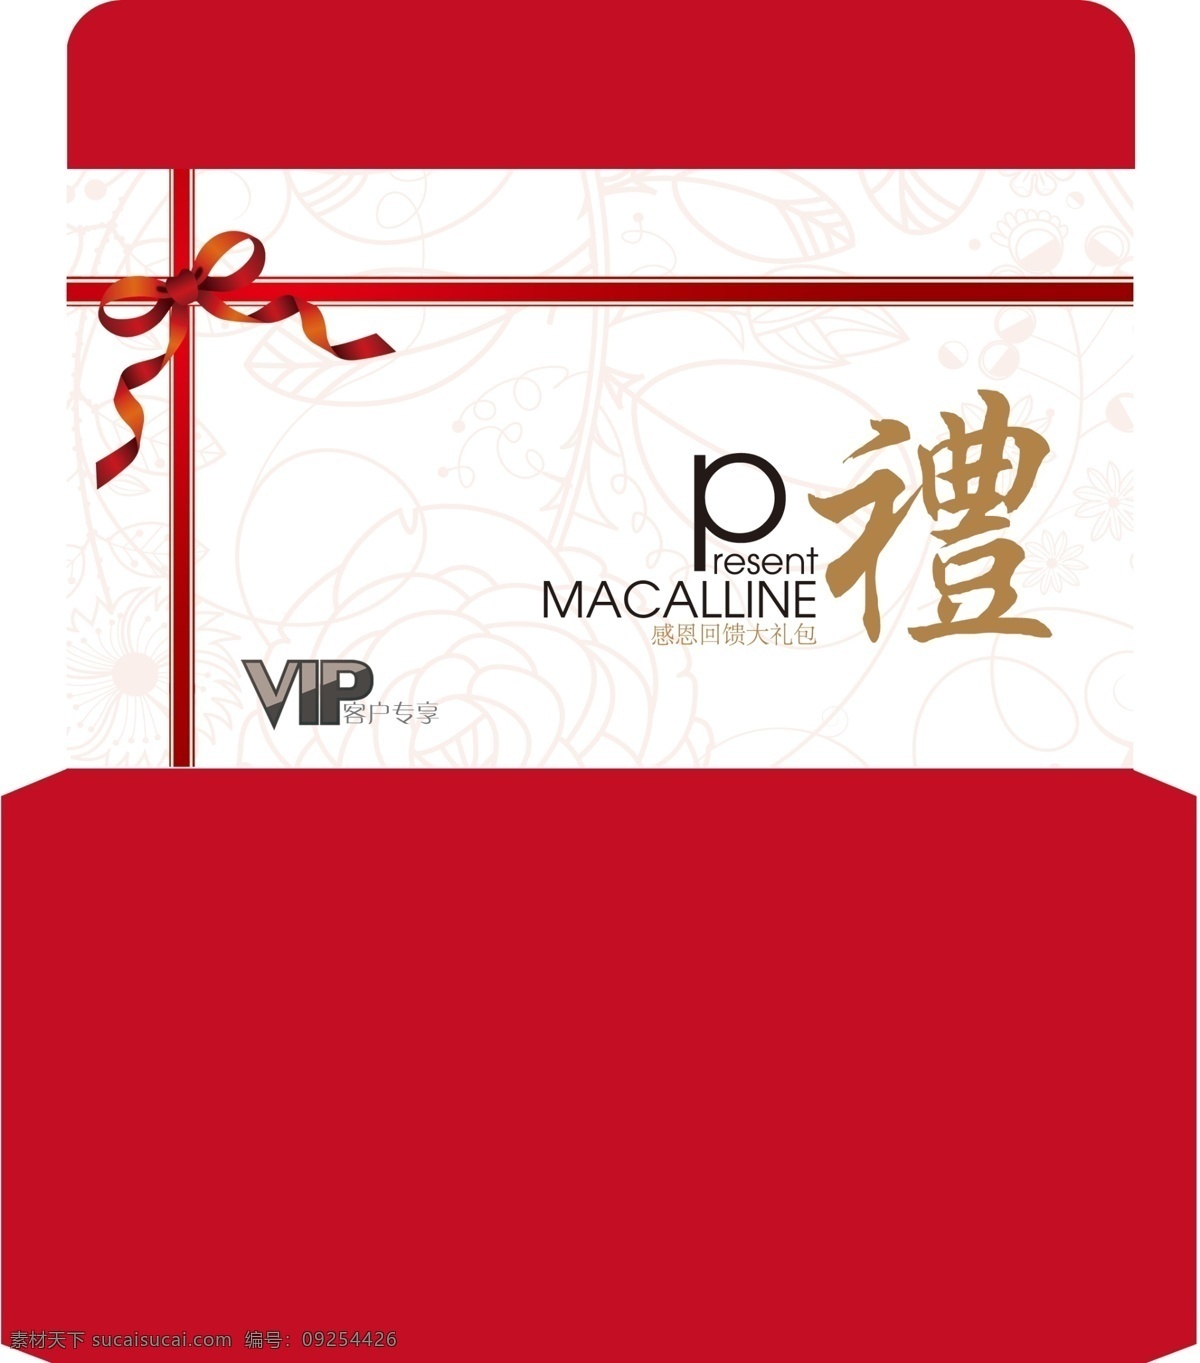 礼品信封 礼品 信封 vip 红 节日 包装 包装设计 广告设计模板 源文件